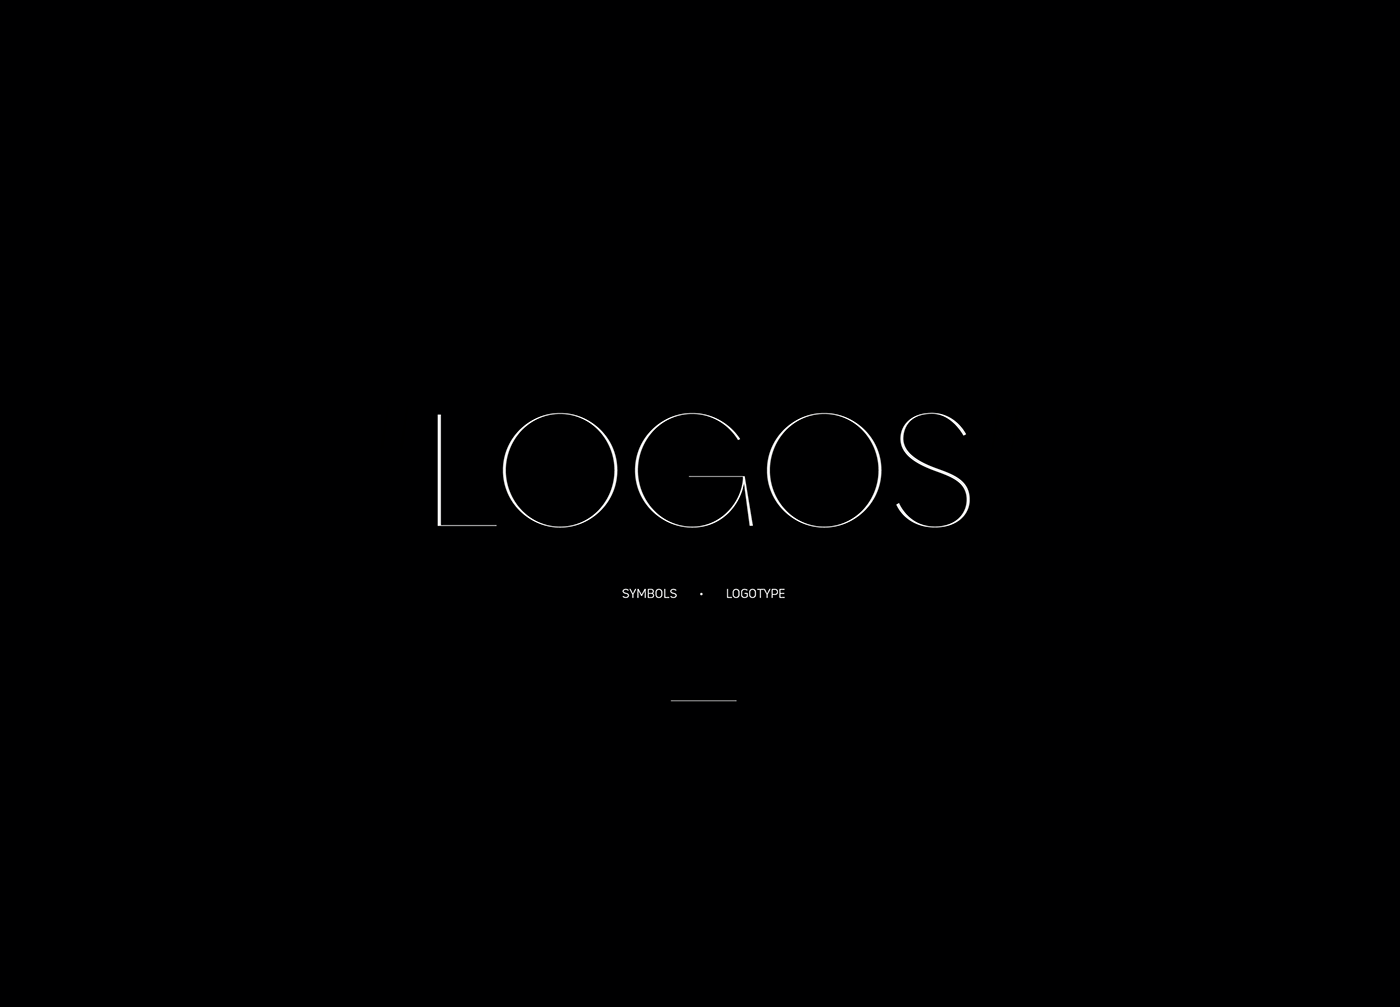 Collection selected logo Isologo symbol identity brand branding  brandmark mark